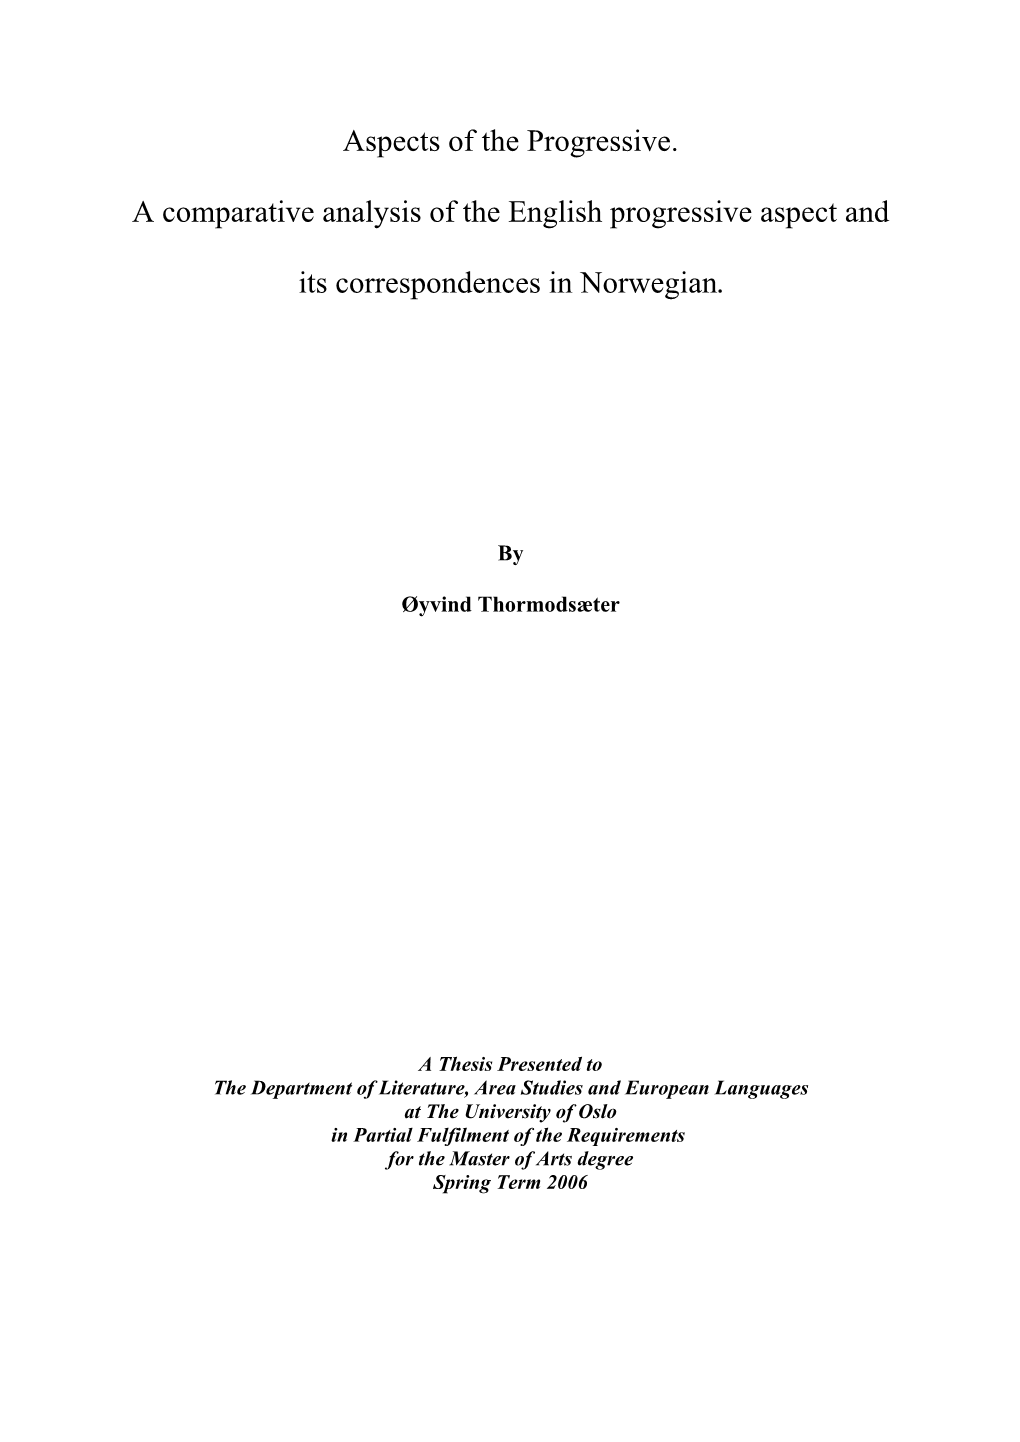 Aspects of the Progressive. a Comparative Analysis of the English Progressive Aspect and Its Correspondences in Norwegian